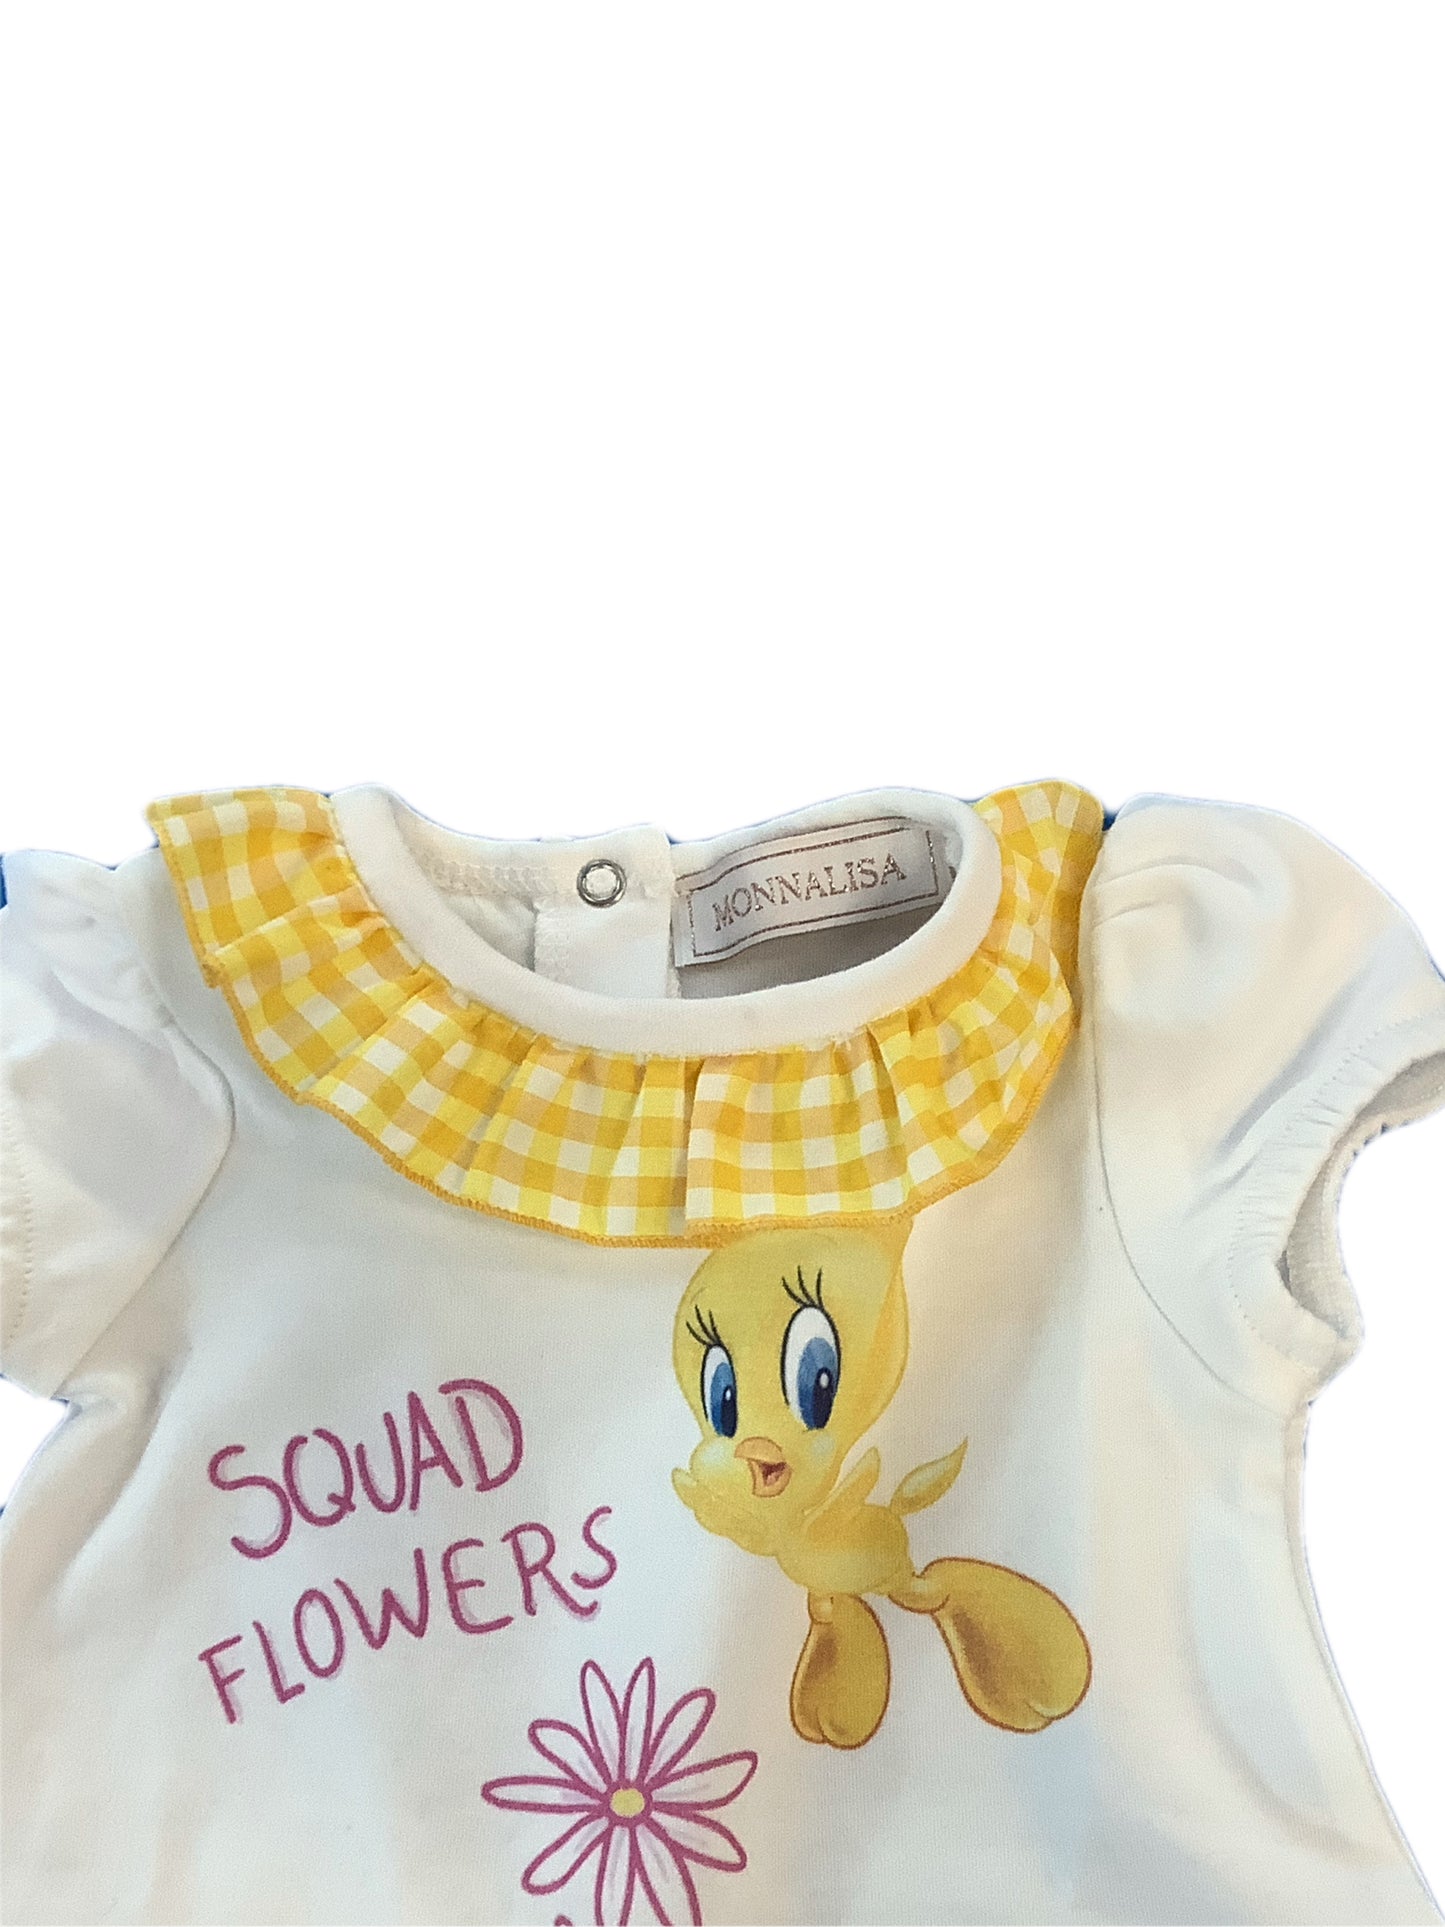 Monnalissa Infant Girls Tweety bird onesie gift set